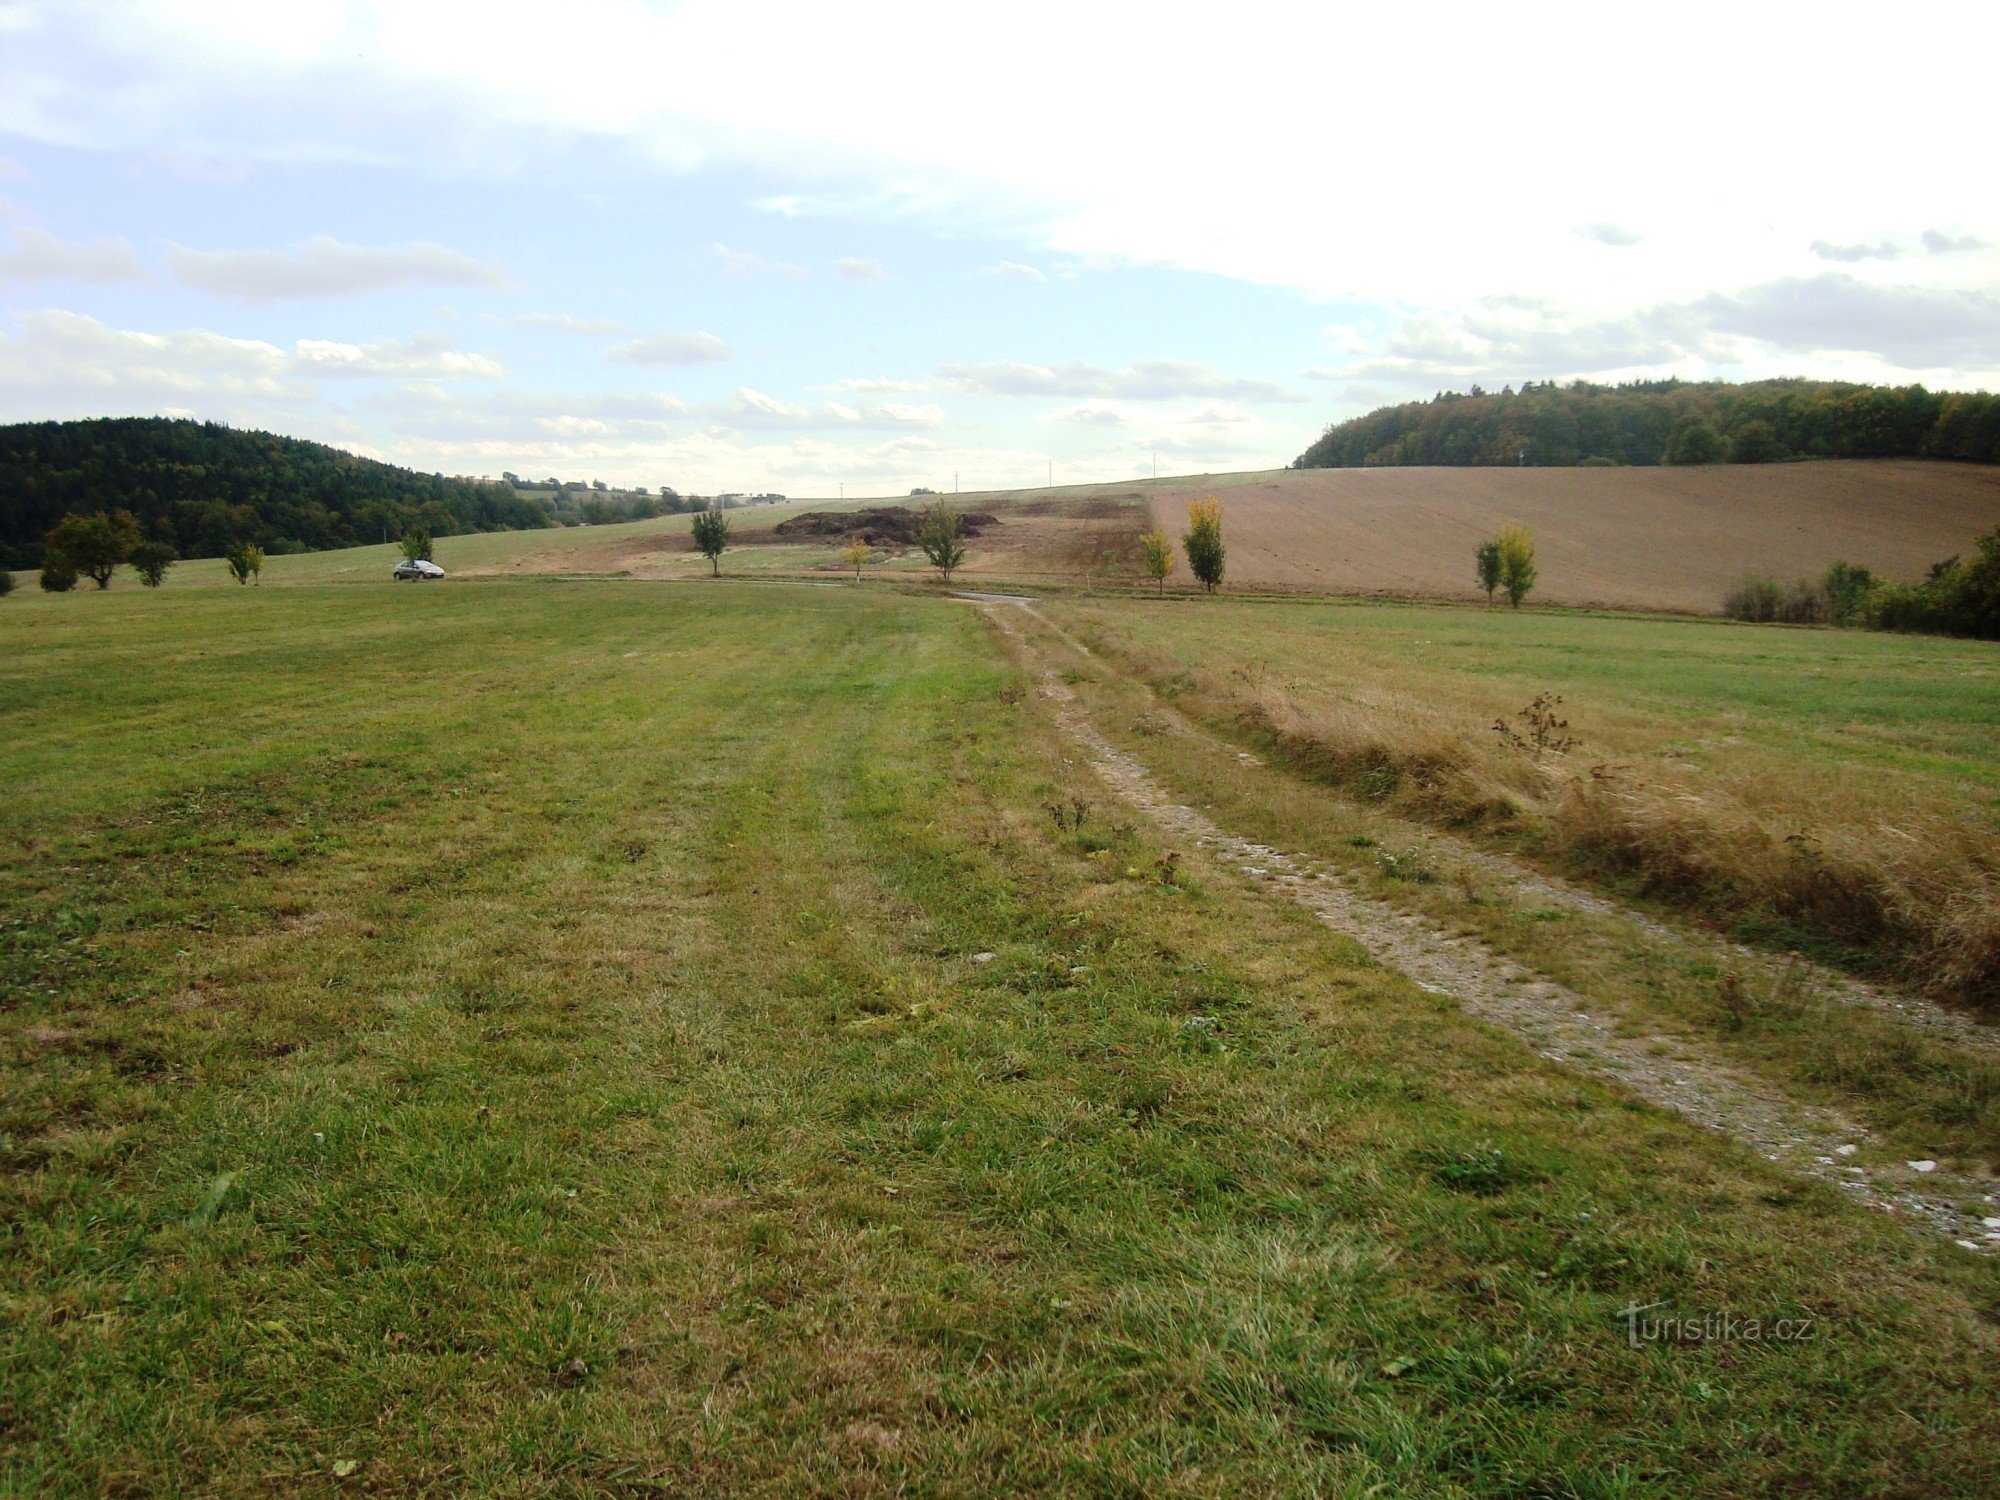 自然保护区 Prűchodnice-从道路-F 保护区通道附近的景观